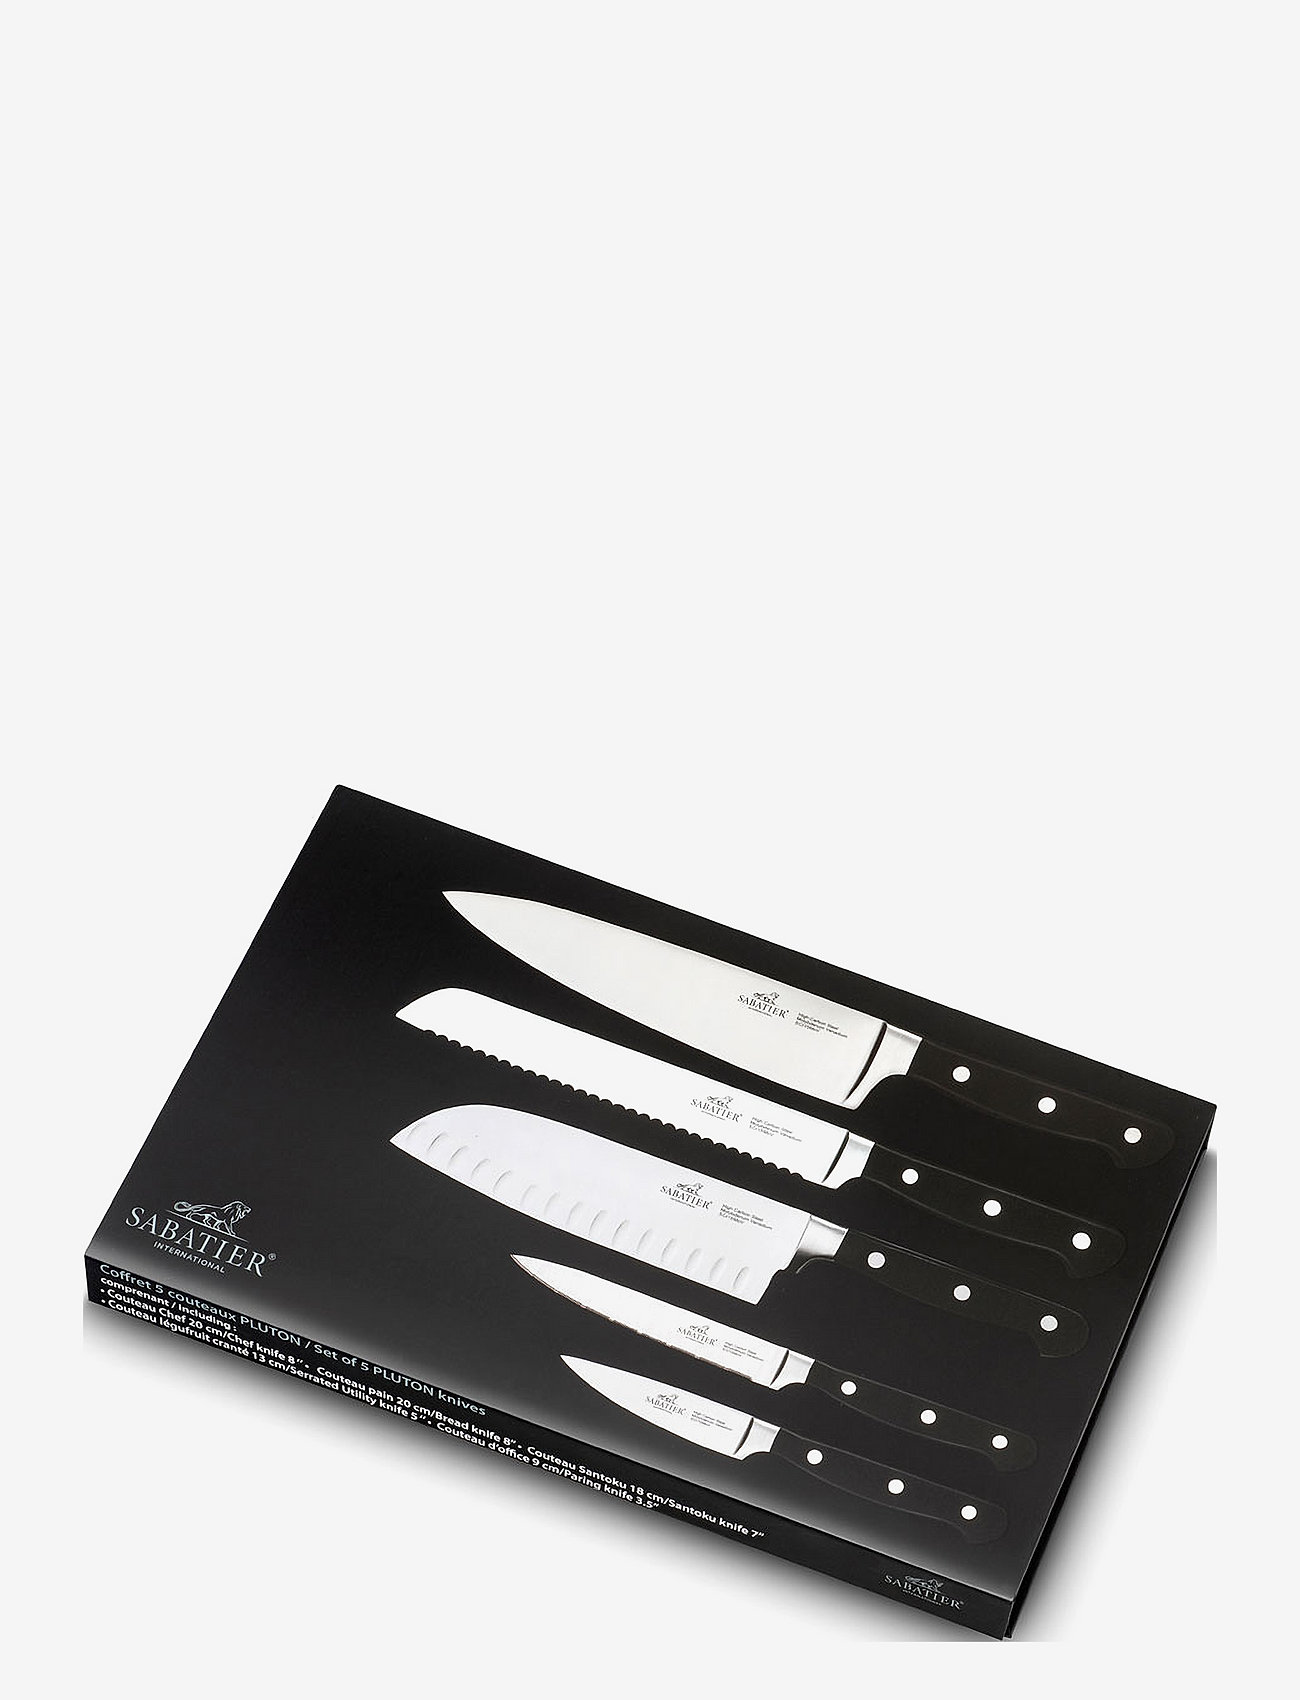 Lion Sabatier - Knife set Pluton 5-pack - knife sets - steel/black - 1